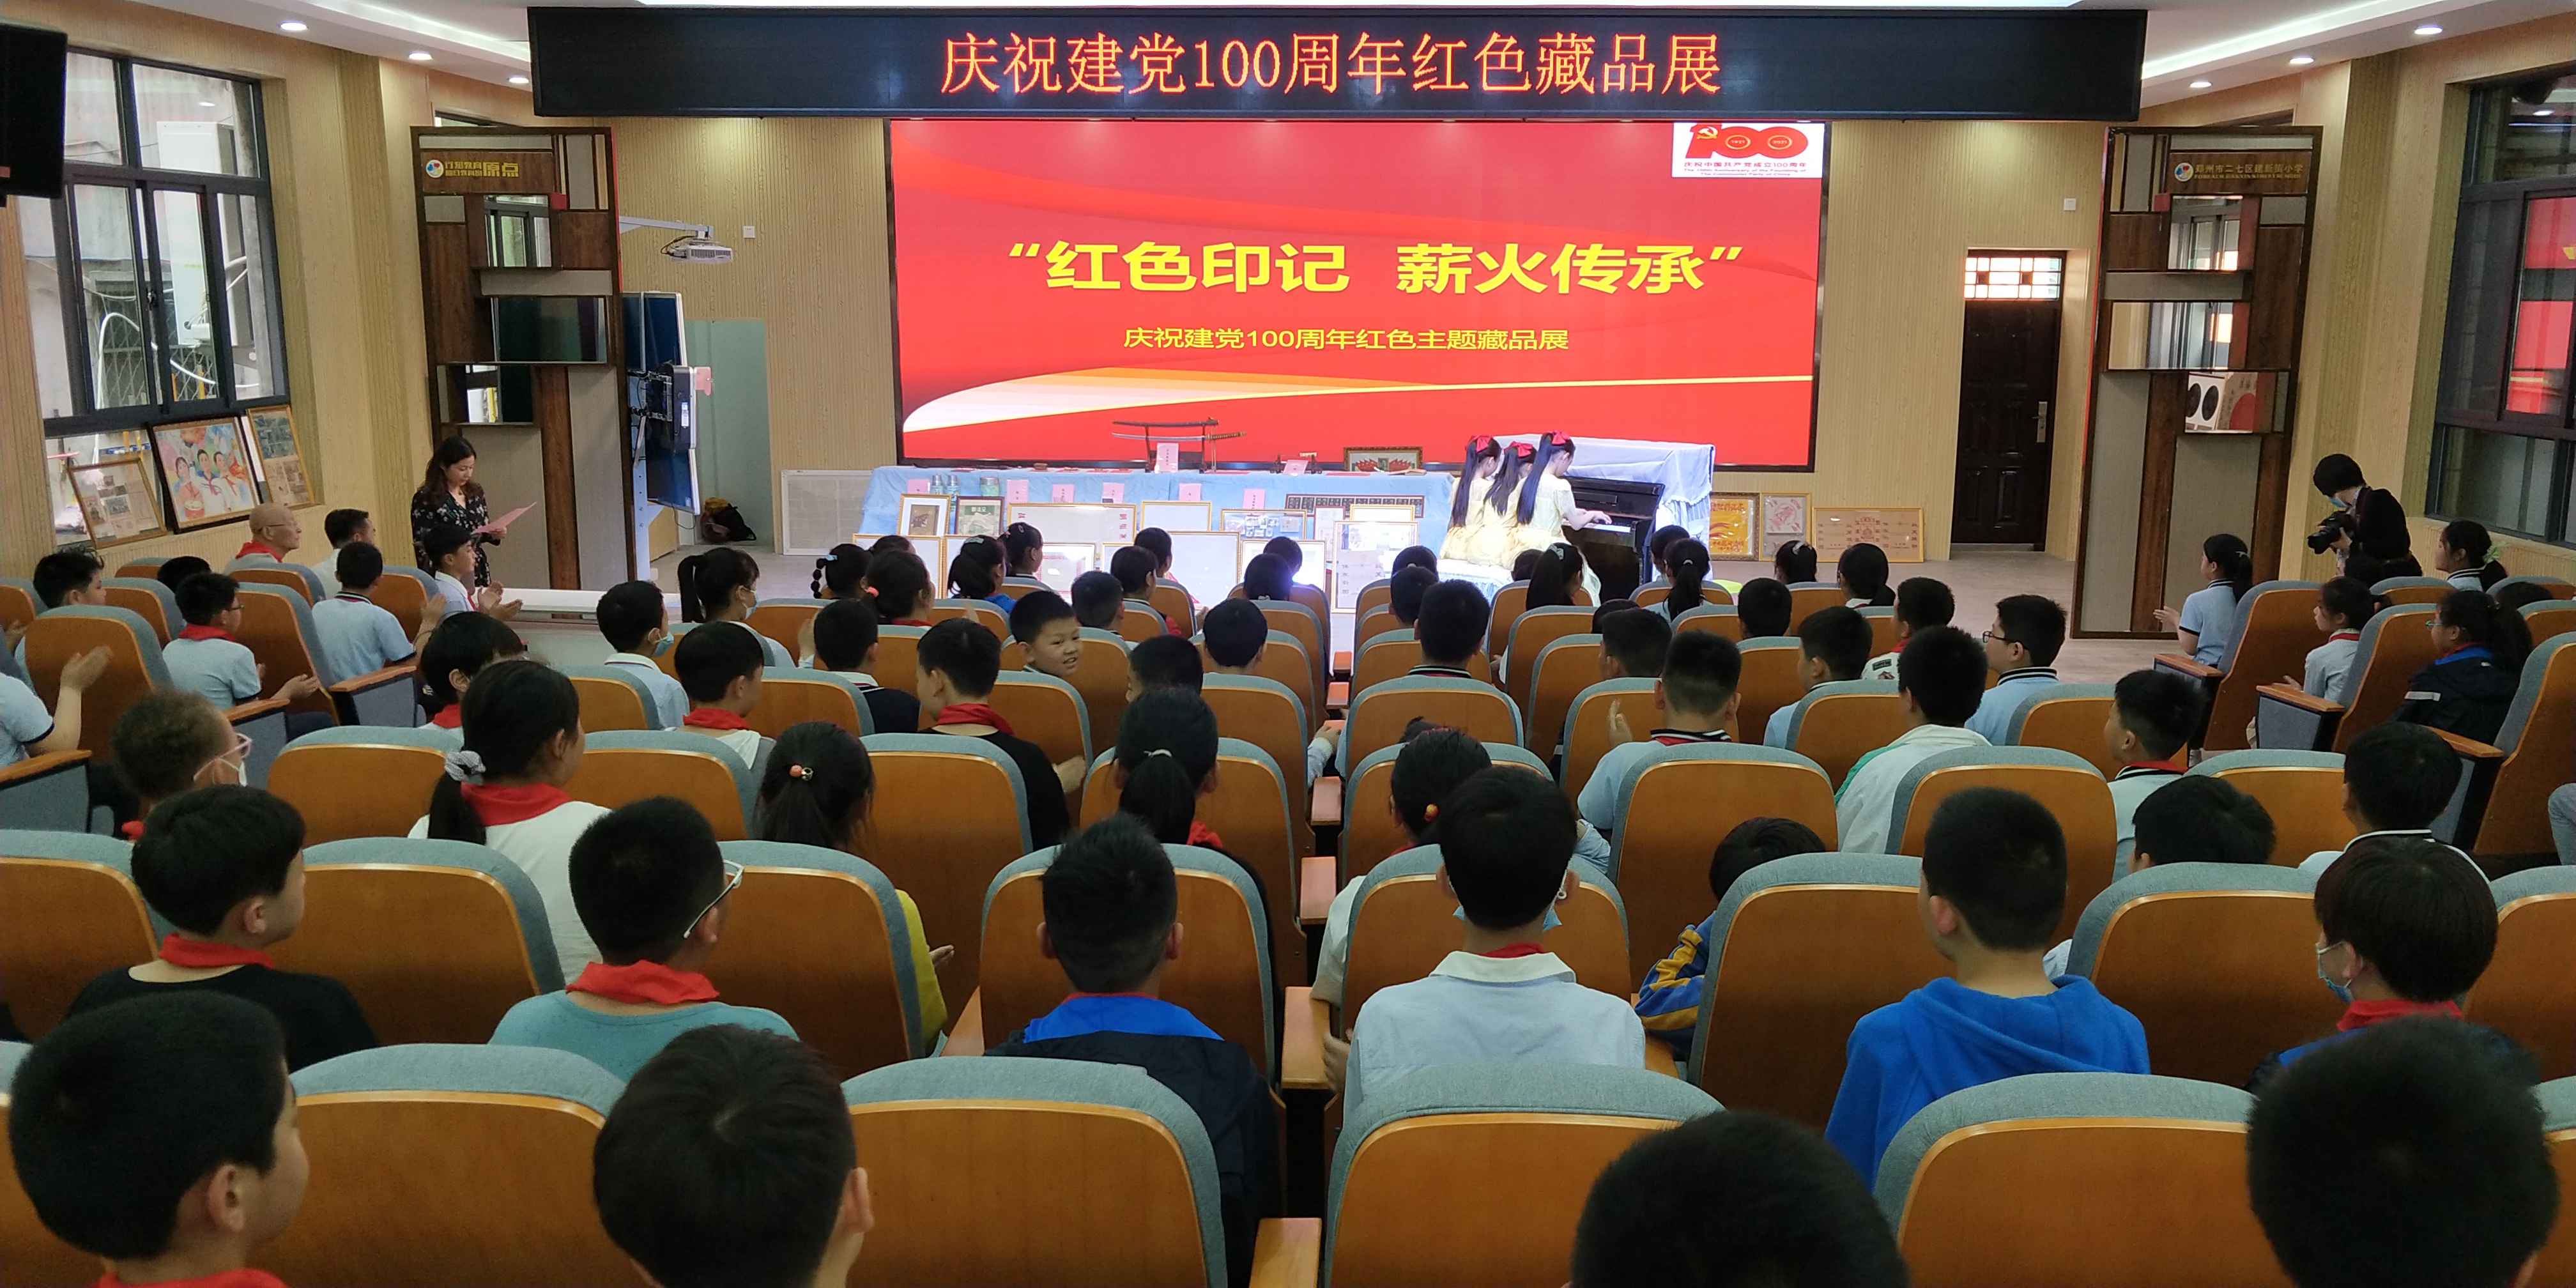 郑州市二七区建新街小学迎建党一百周年红色藏品展在该校举行